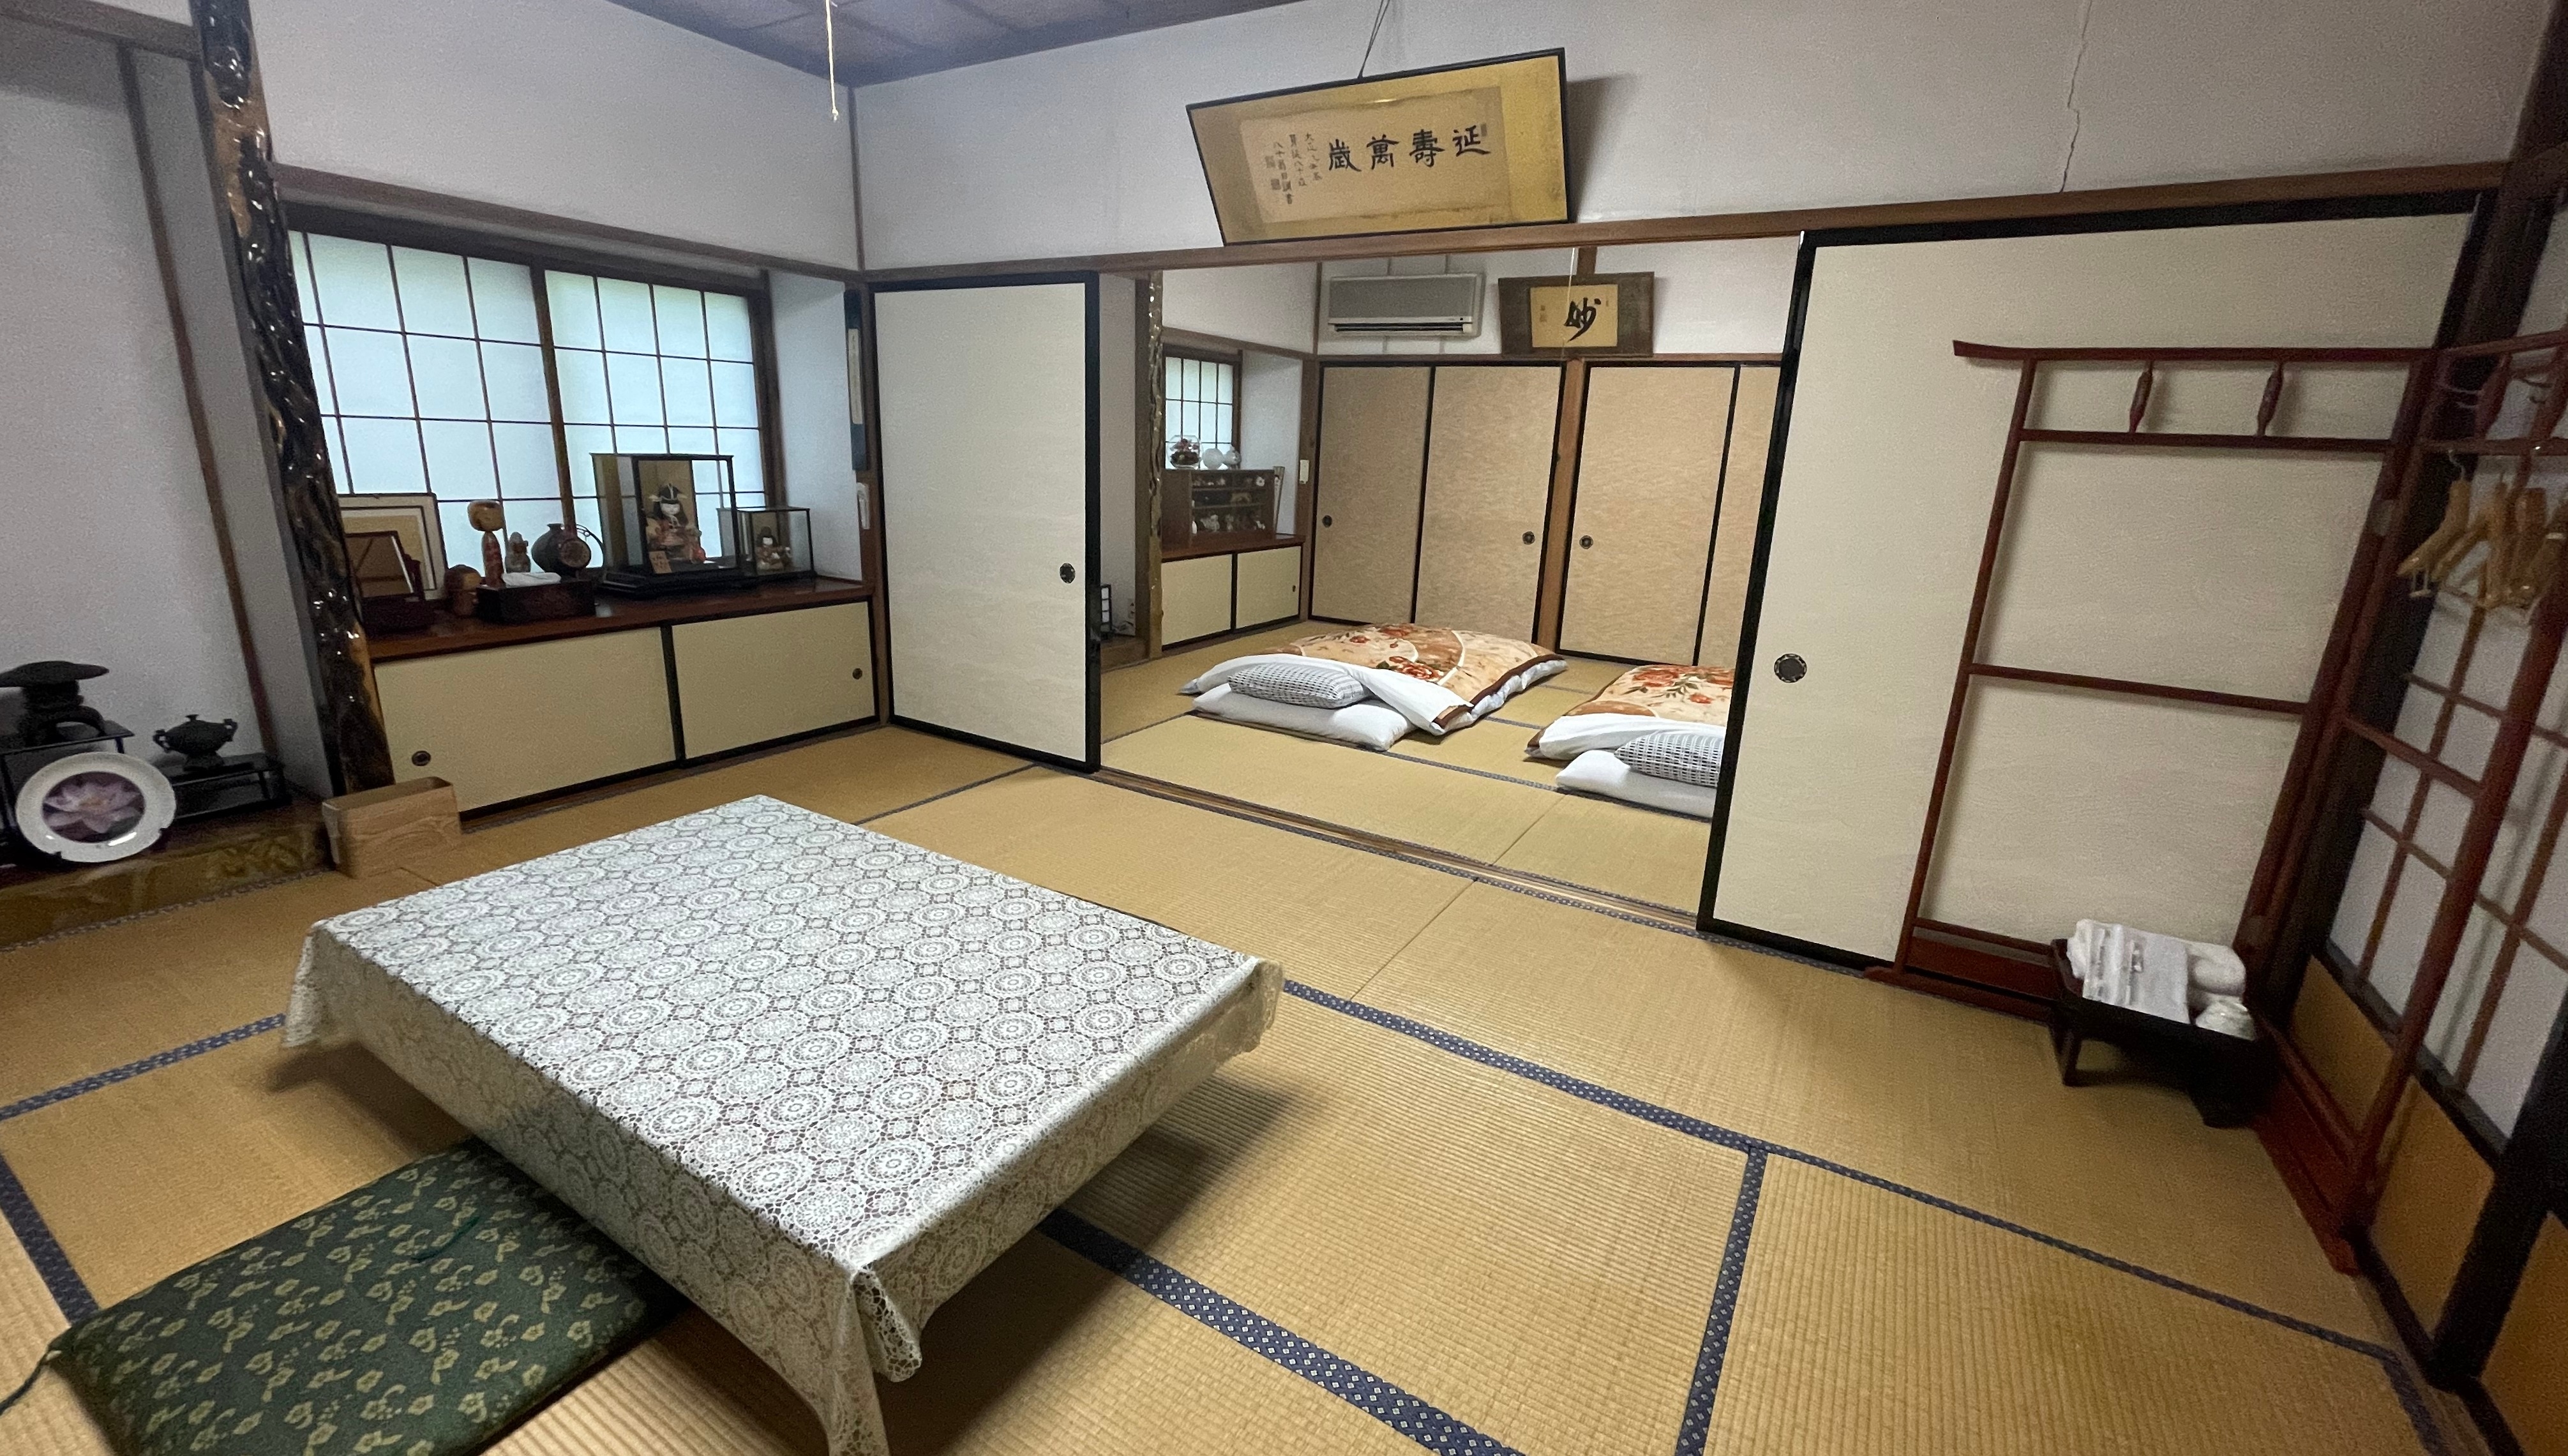 【獨立日式房間】享受私人空間的日式房間-20張榻榻米